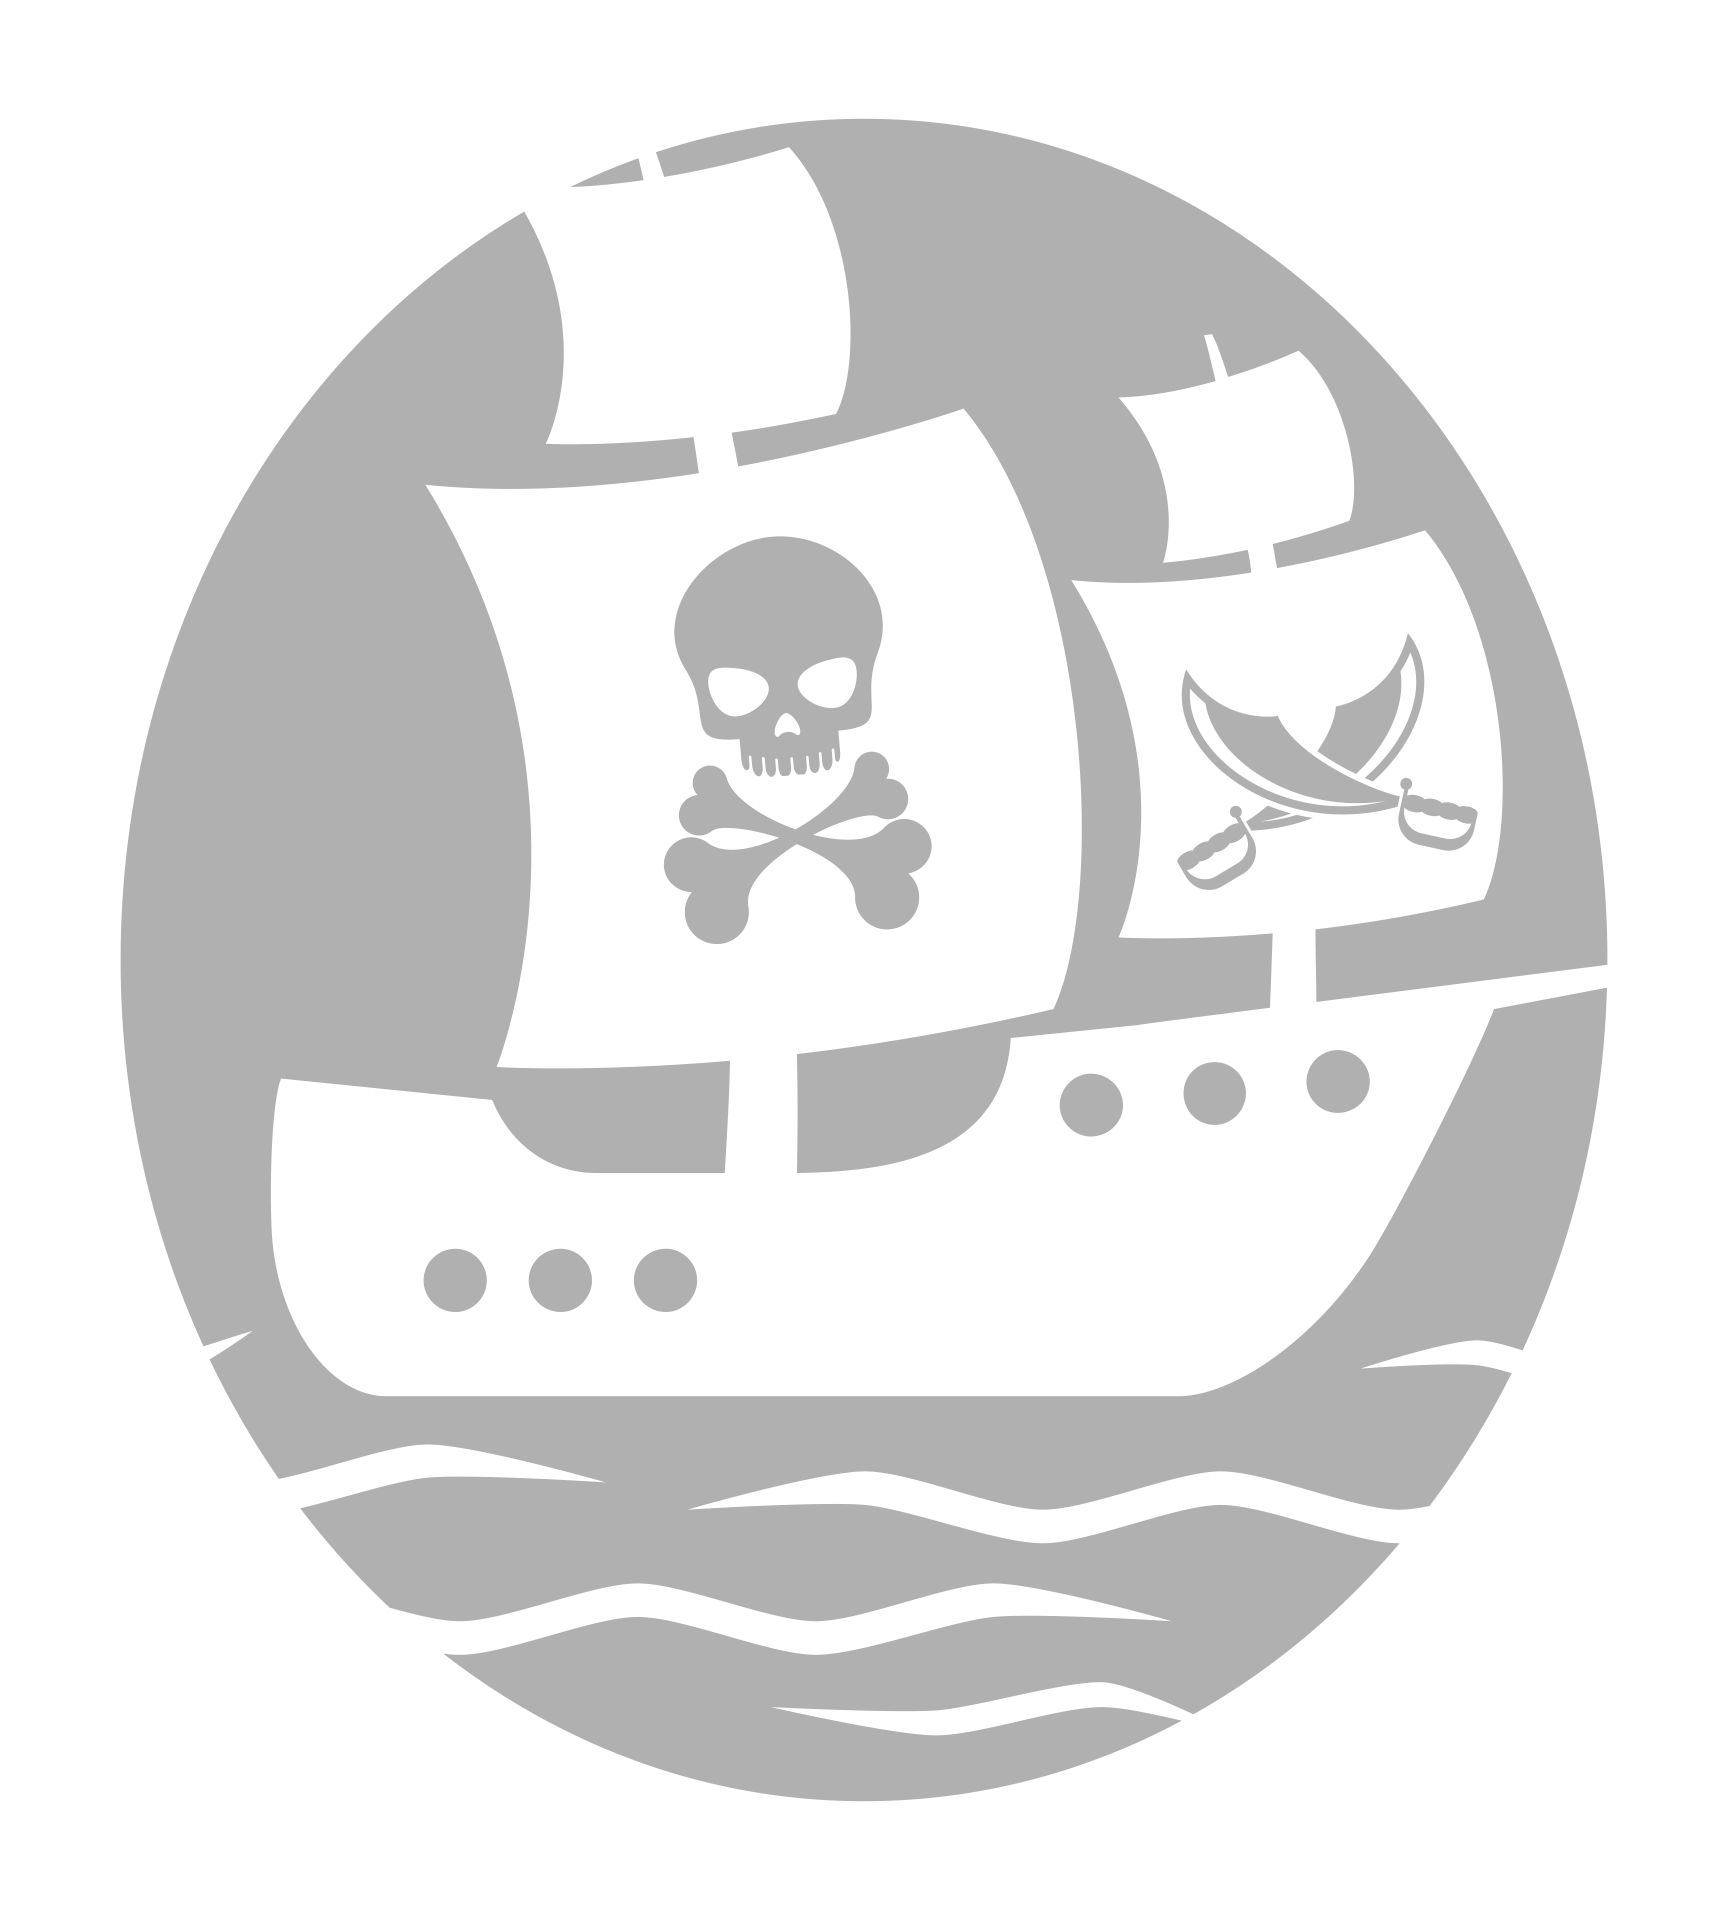 pirate ship pumpkin stencil